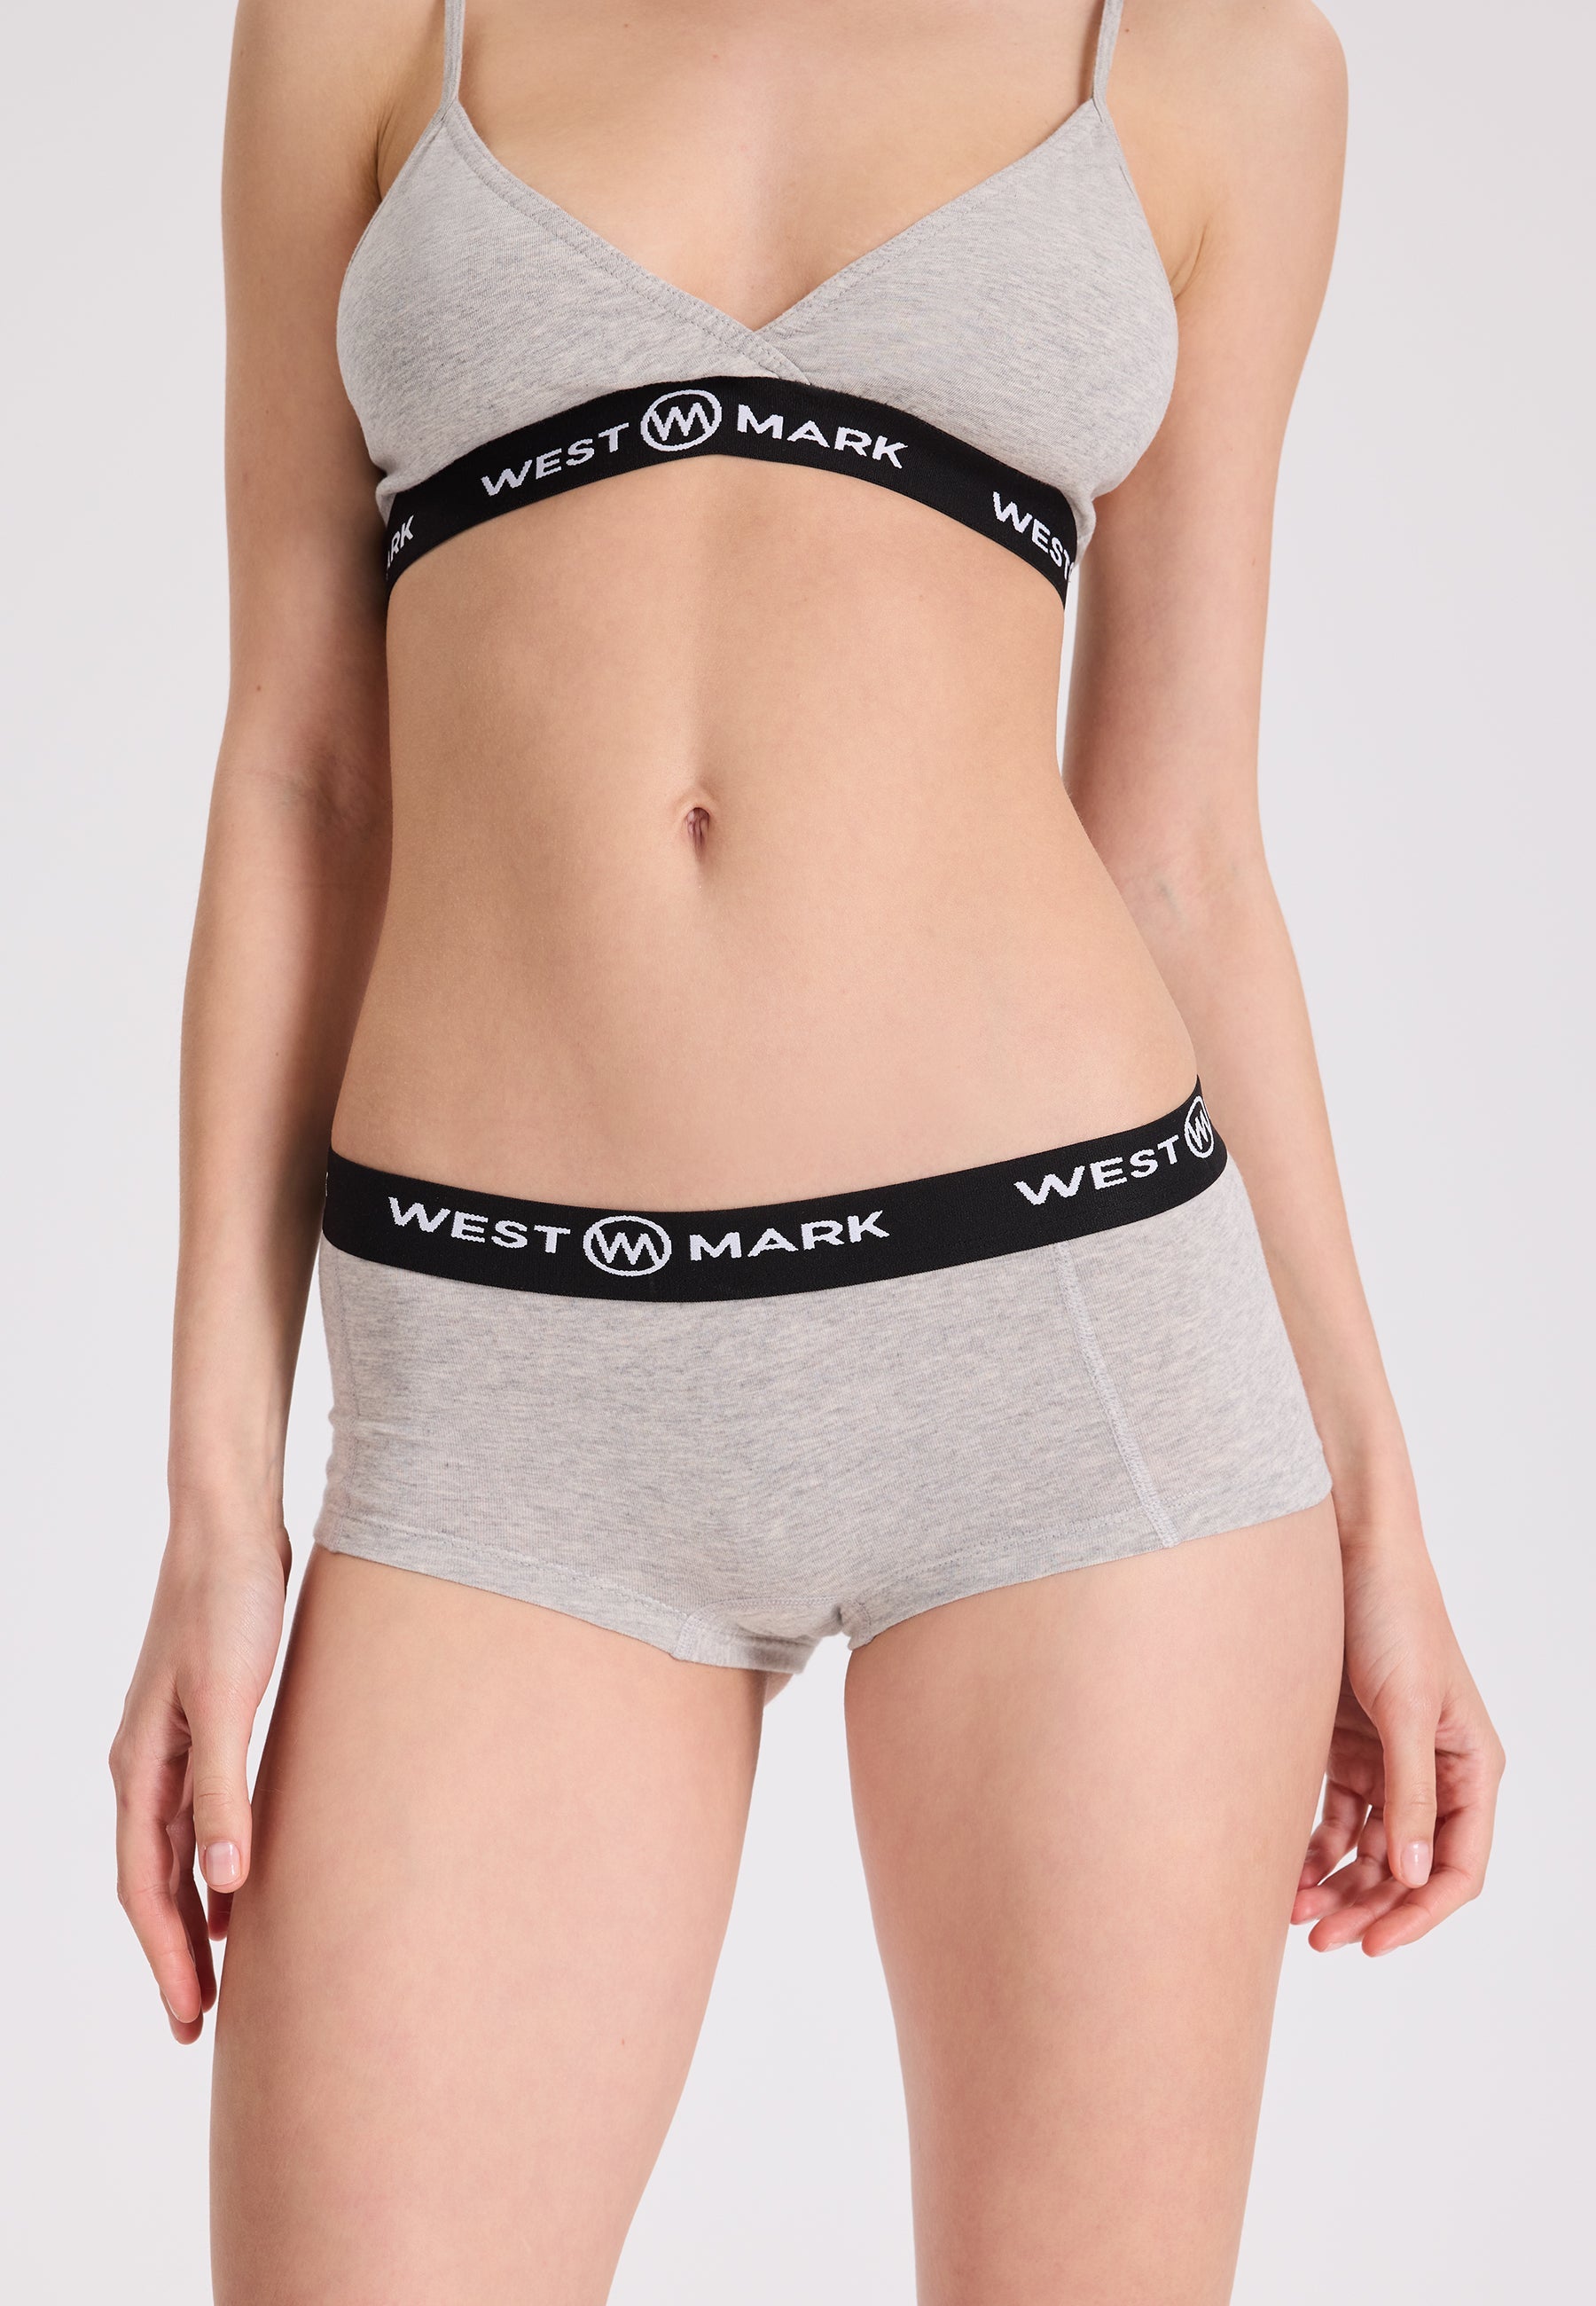 4’lü Gri Pamuk Elastan Karışımı Kadın Hipster LILY - Underwear - Westmark London EU(TR) Store Organik Pamuklu Sürdürülebilir Moda